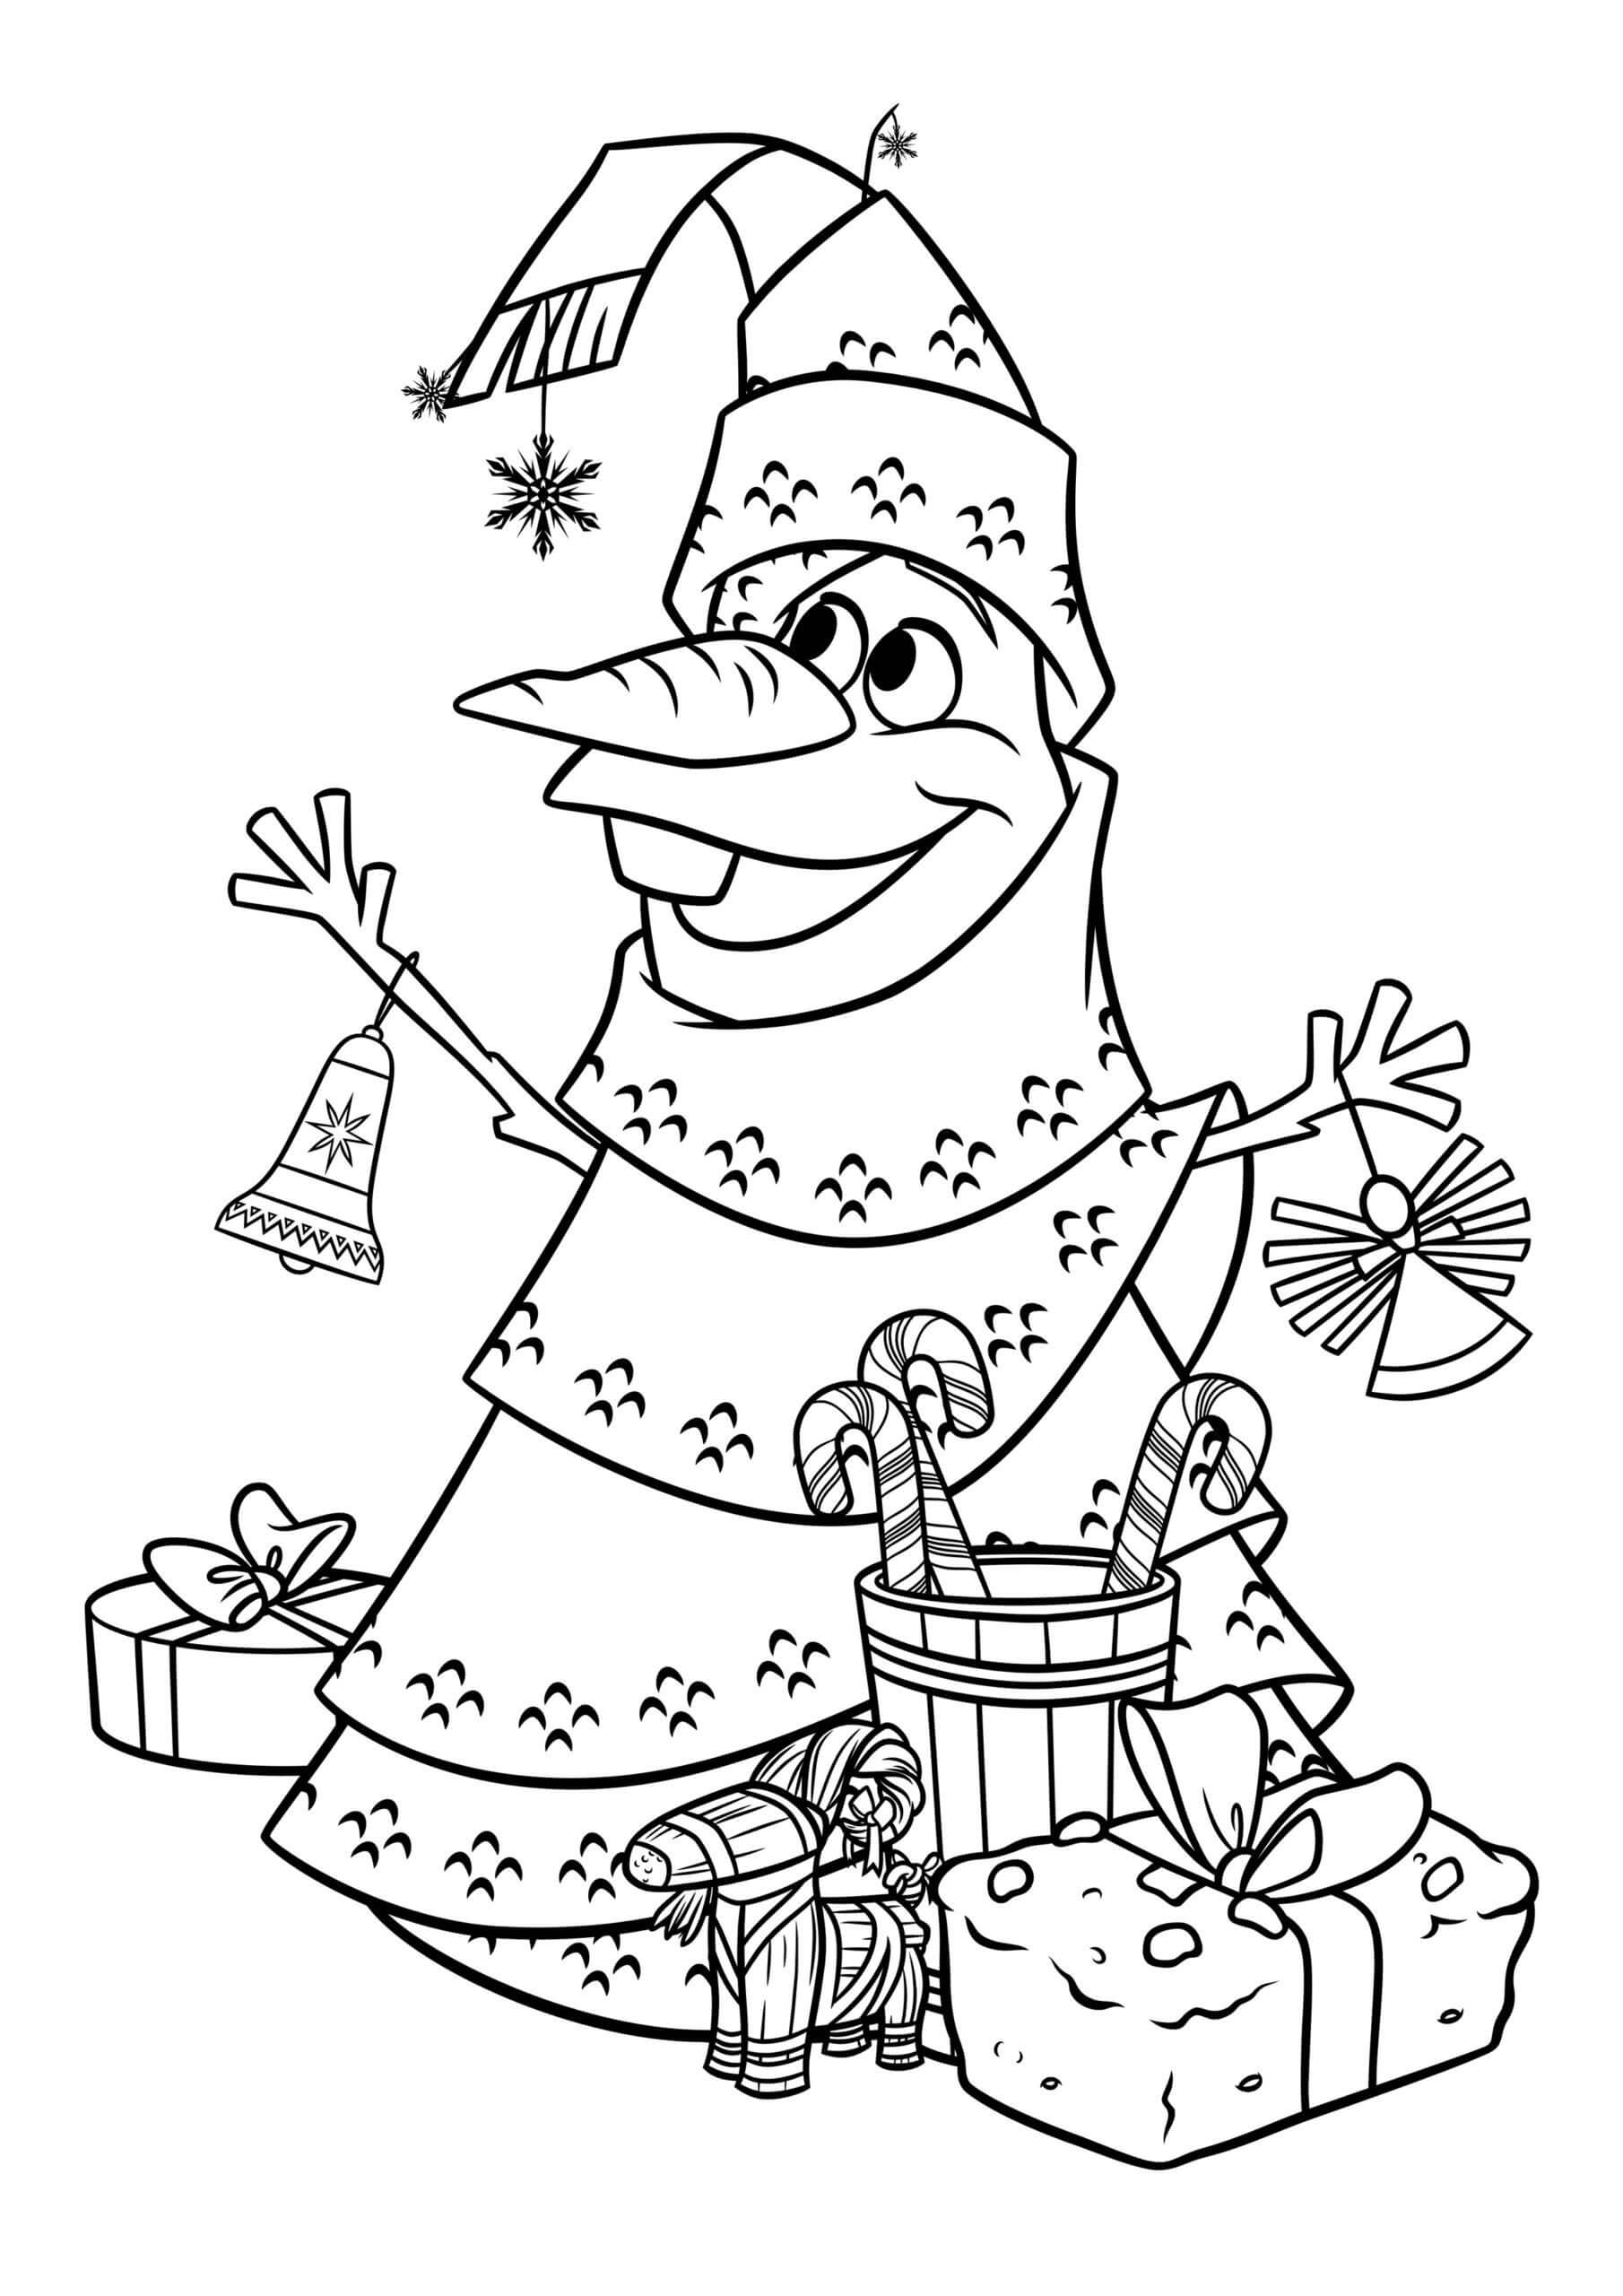 Olaf le Sapin de Noël coloring page